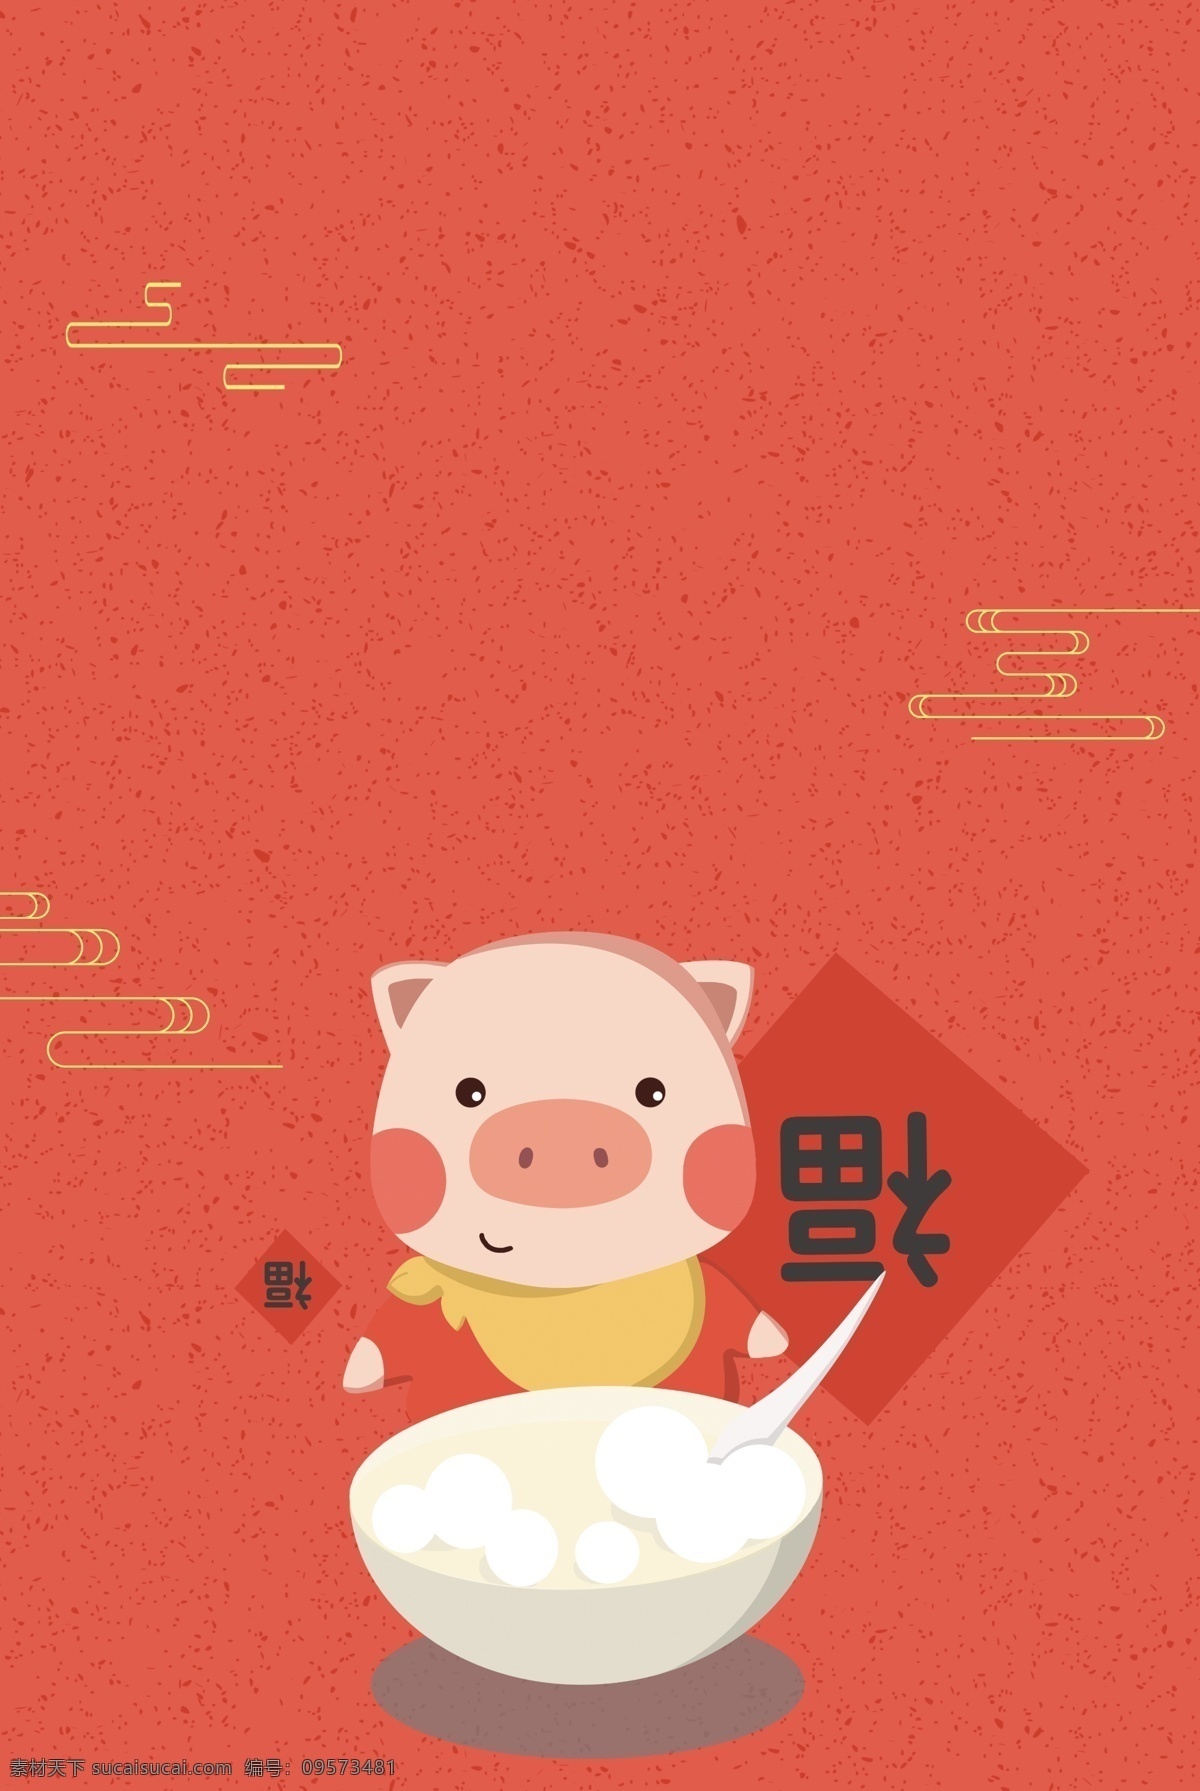 元宵节 卡通 猪年 元宵 活动 背景 卡通猪 汤圆 元宵活动 促销 海报 元宵打折 猪 吃汤圆